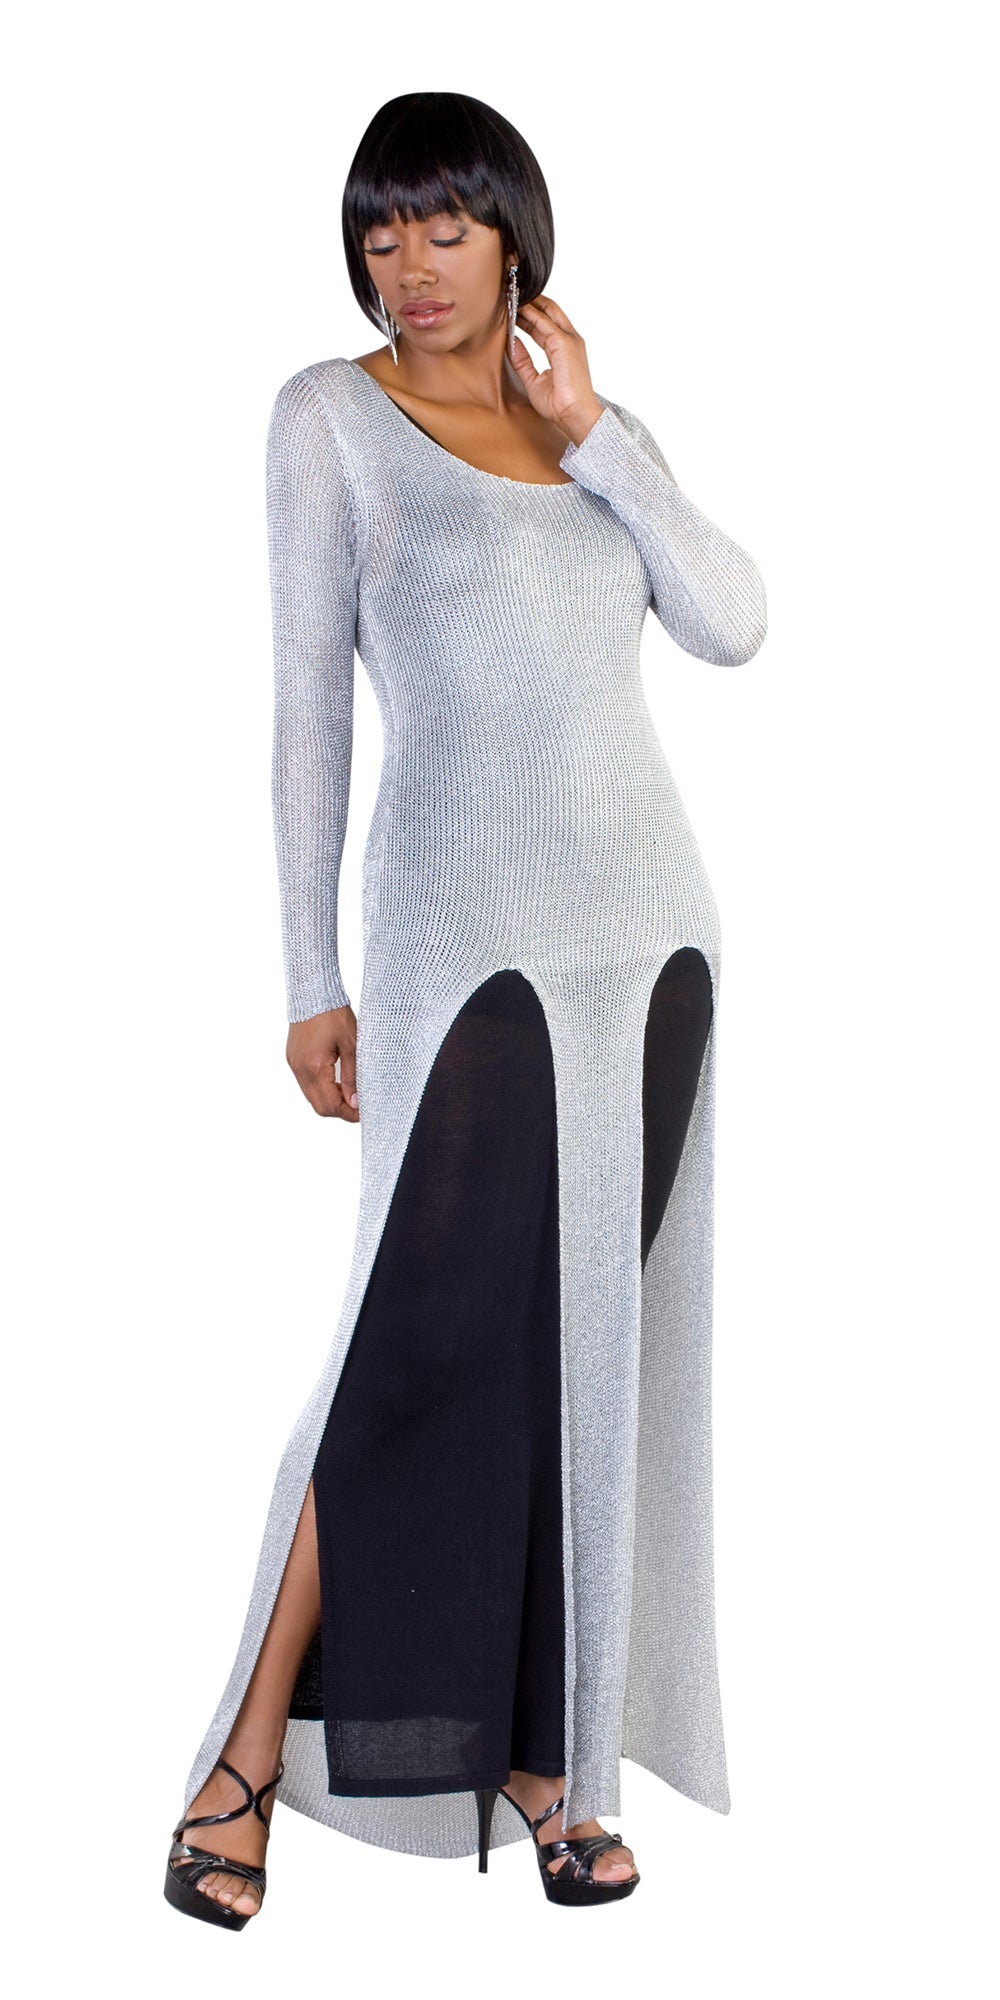 Kayla 5165 - Silver Knit Dress In Metallic Fabric With Tank Beneath